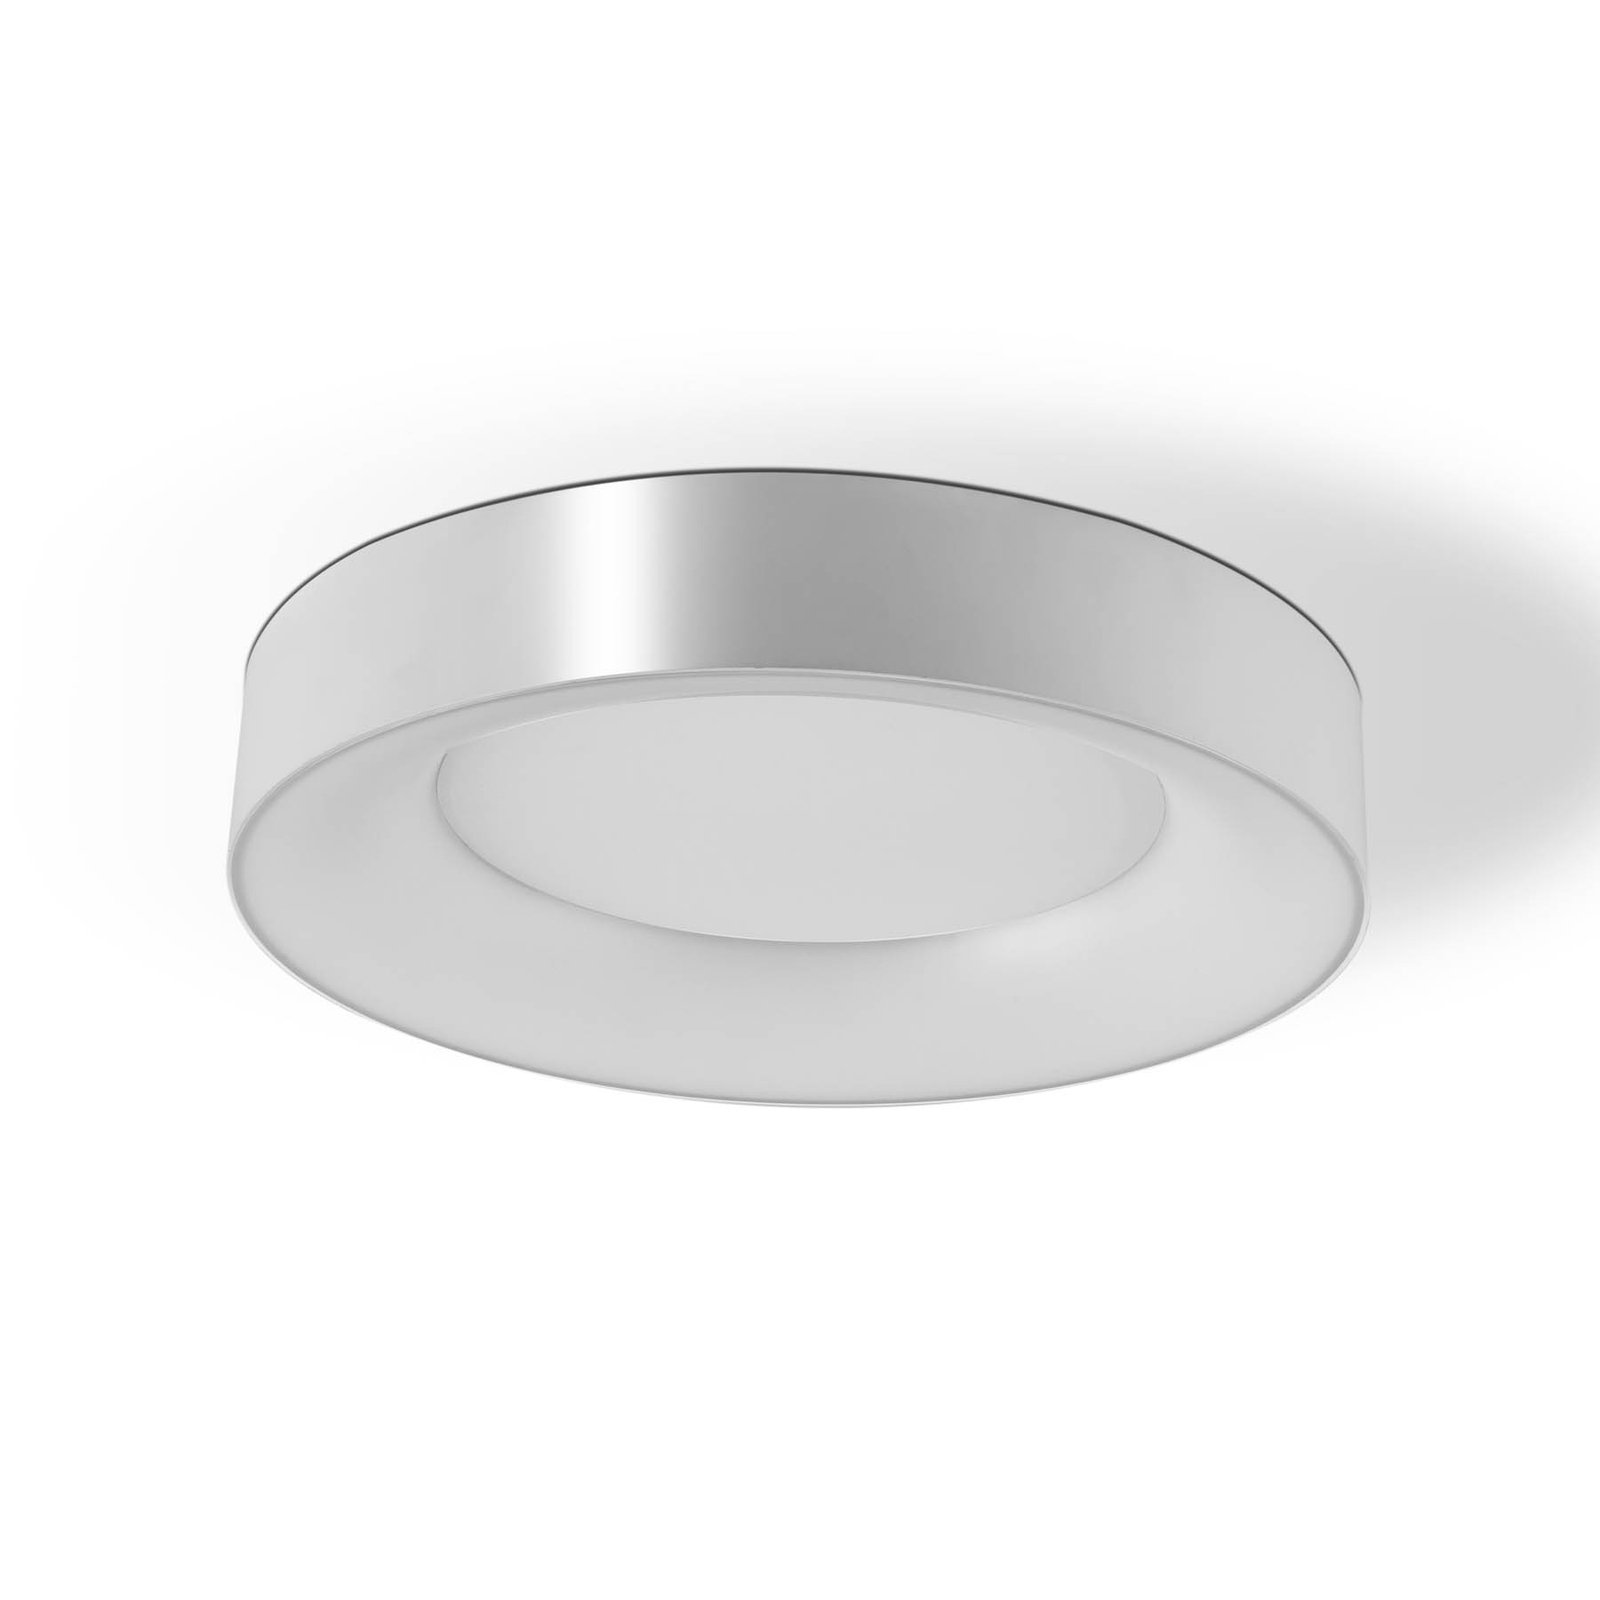 Stropní svítidlo Sauro LED, Ø 40 cm, stříbrná